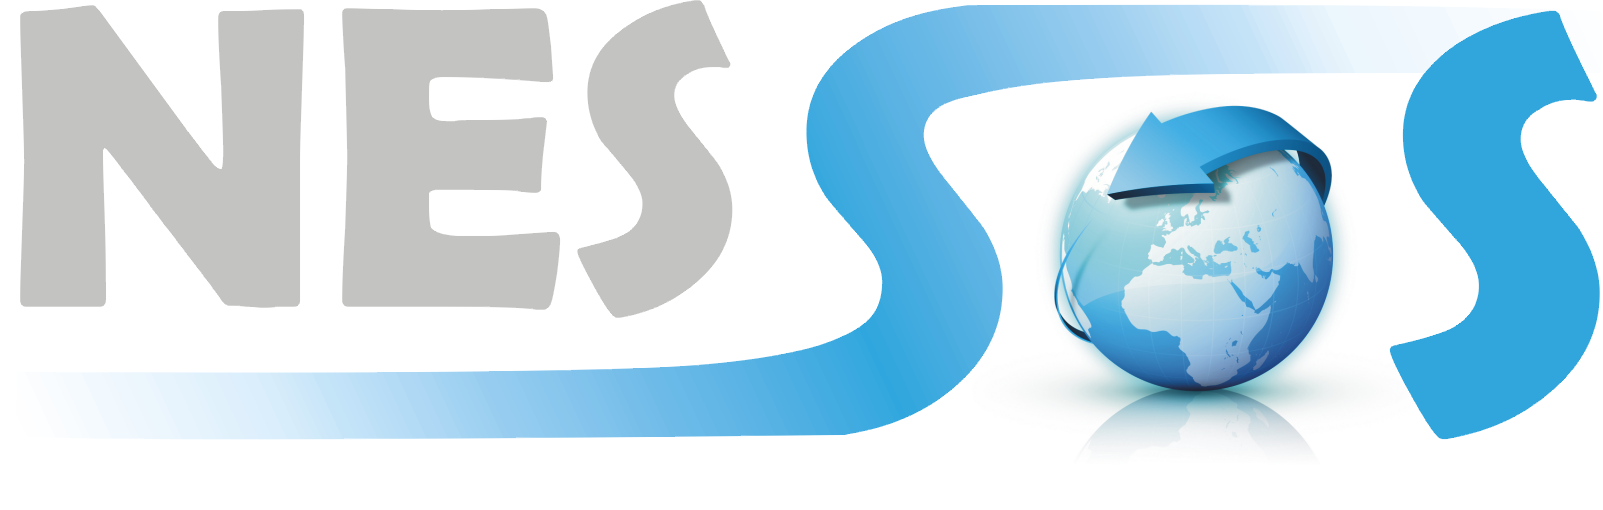 NESSoS logo